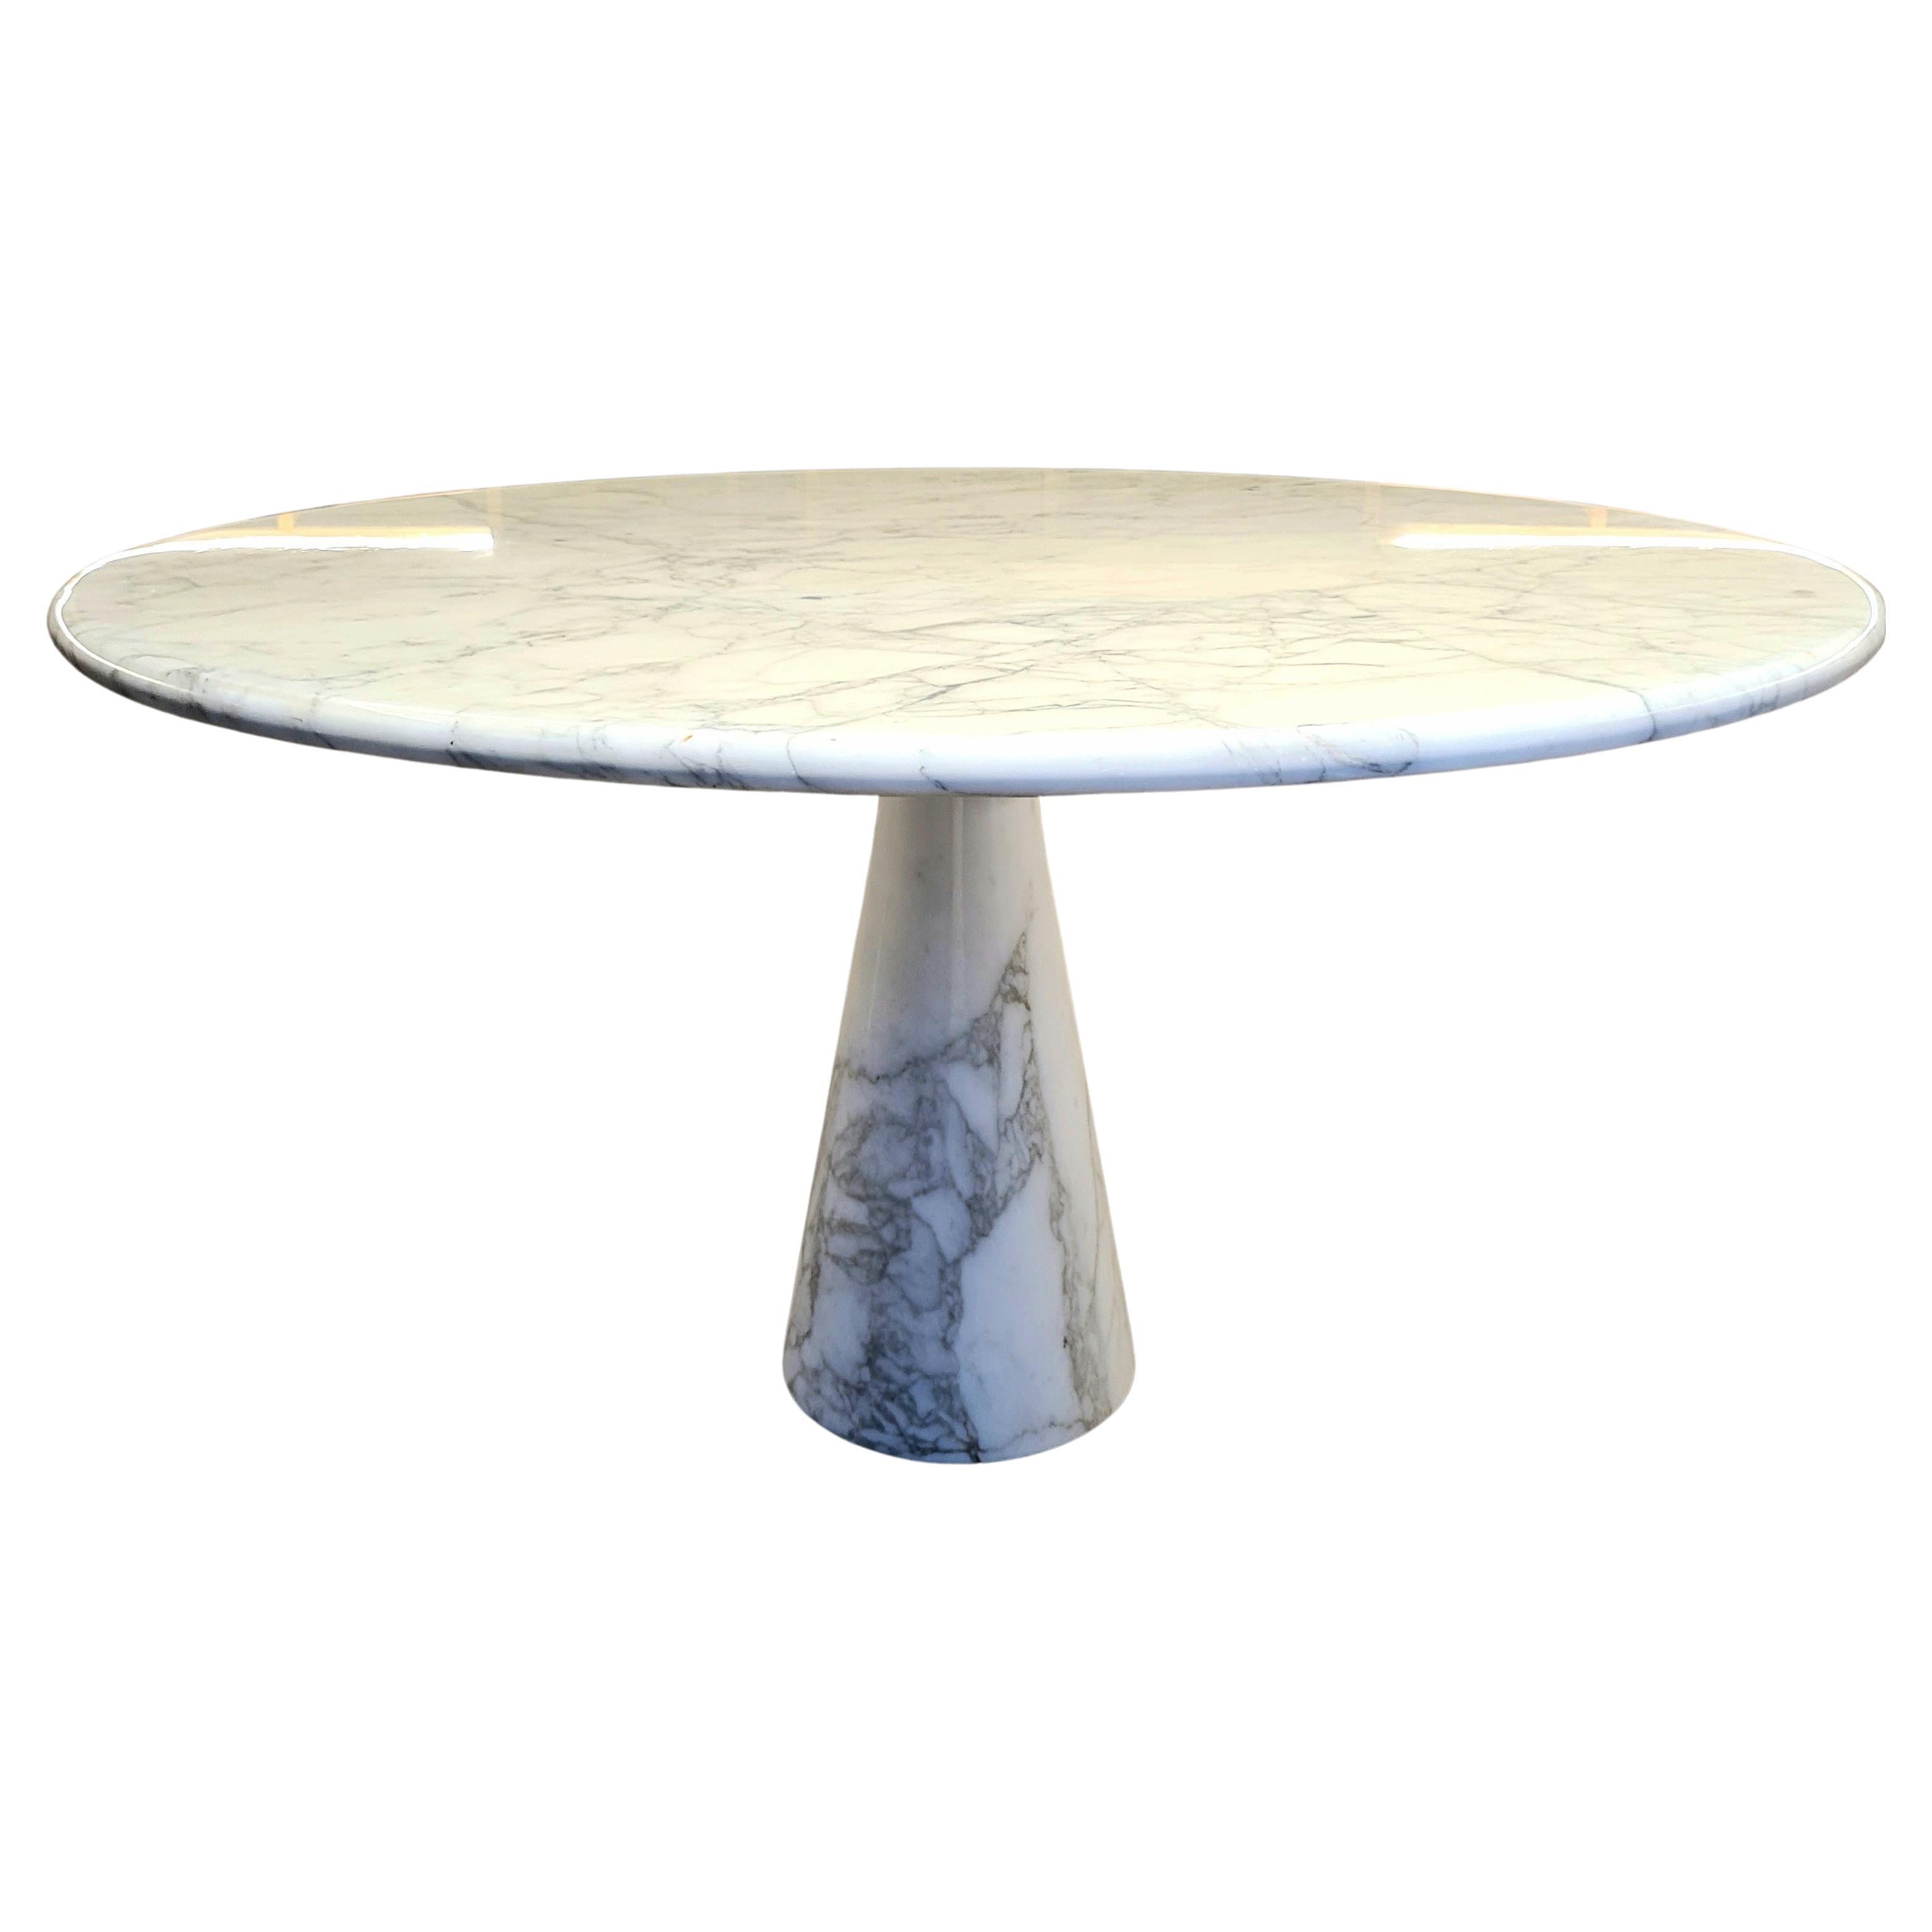 Il tavolo modello M in marmo Calacatta di Angelo Mangiarotti per Tisettanta, realizzato negli anni '60, è un autentico capolavoro del design che incarna l'eleganza e l'eccellenza dell'epoca.

Questo esemplare è un raro esemplare originale degli